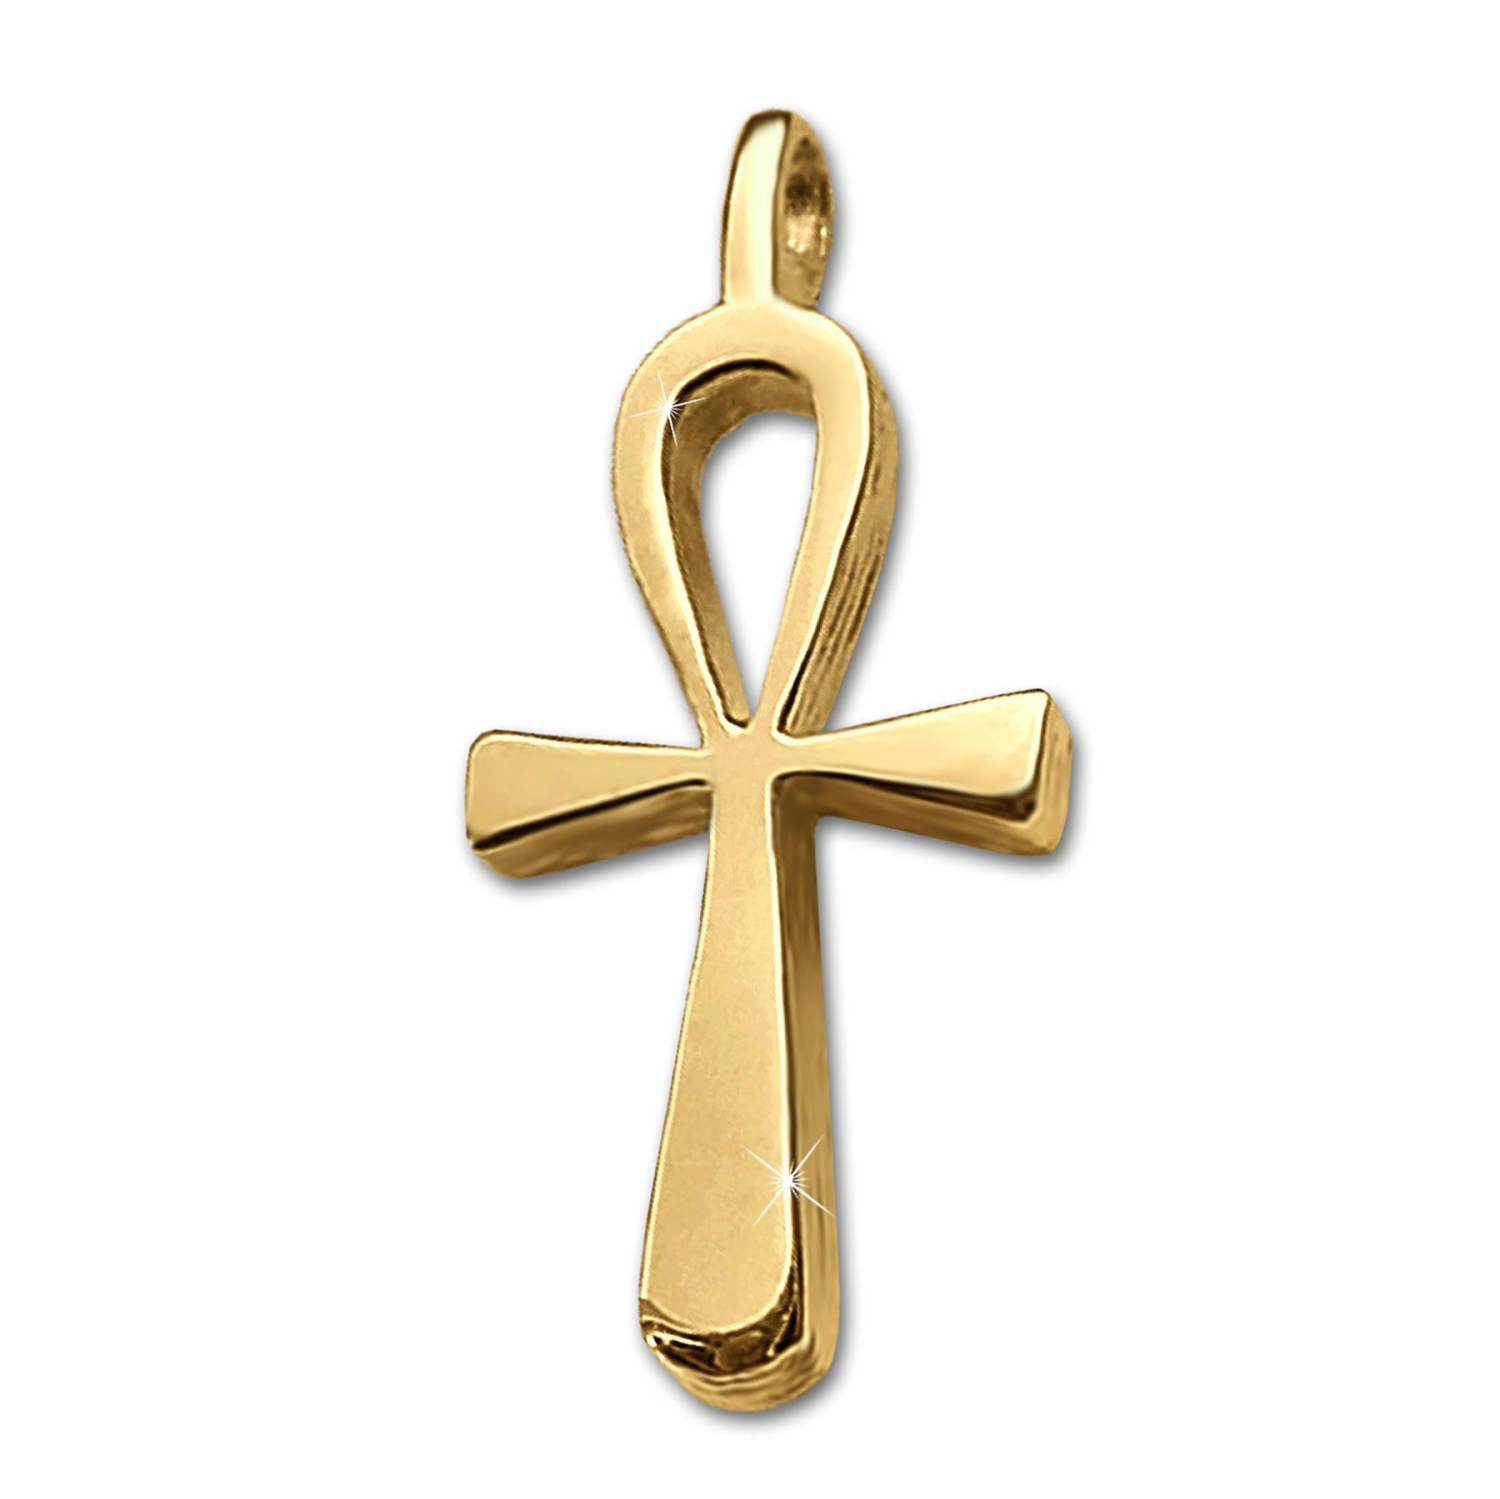 Goldener Anhänger kleines Ägyptisches Kreuz 18 mm ANCH schlicht glänzend 333 GOLD 8 KARAT